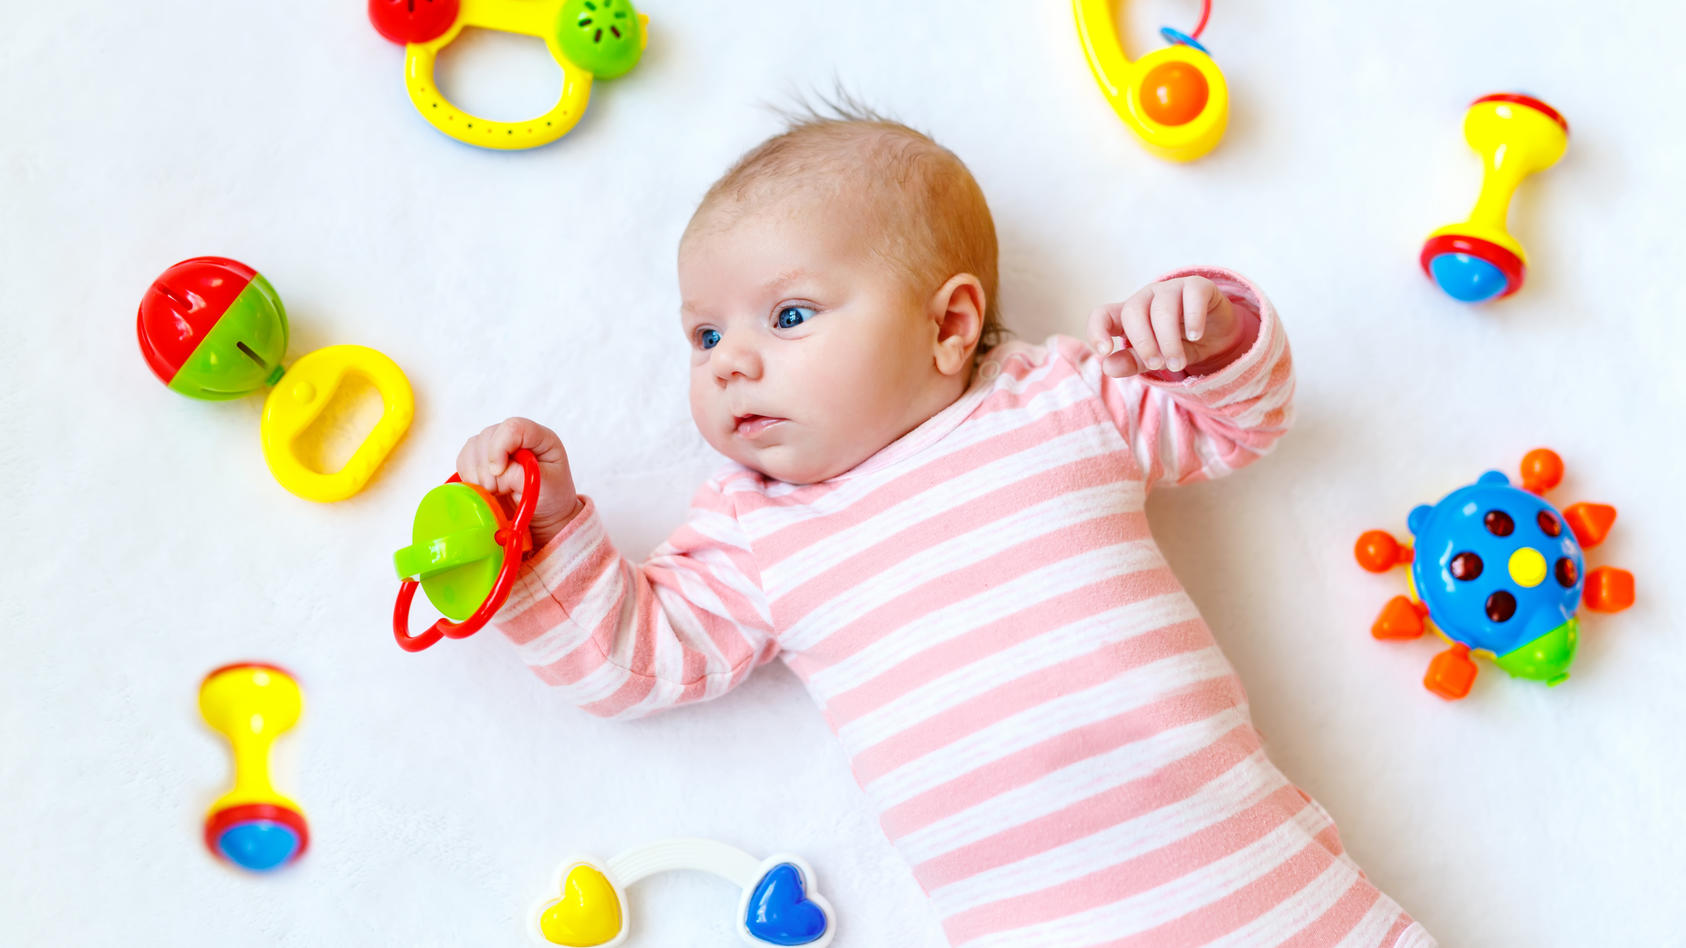 Babyentwicklung 5 Monat Wie Sie Das Baby Spielerisch Fordern Konnen